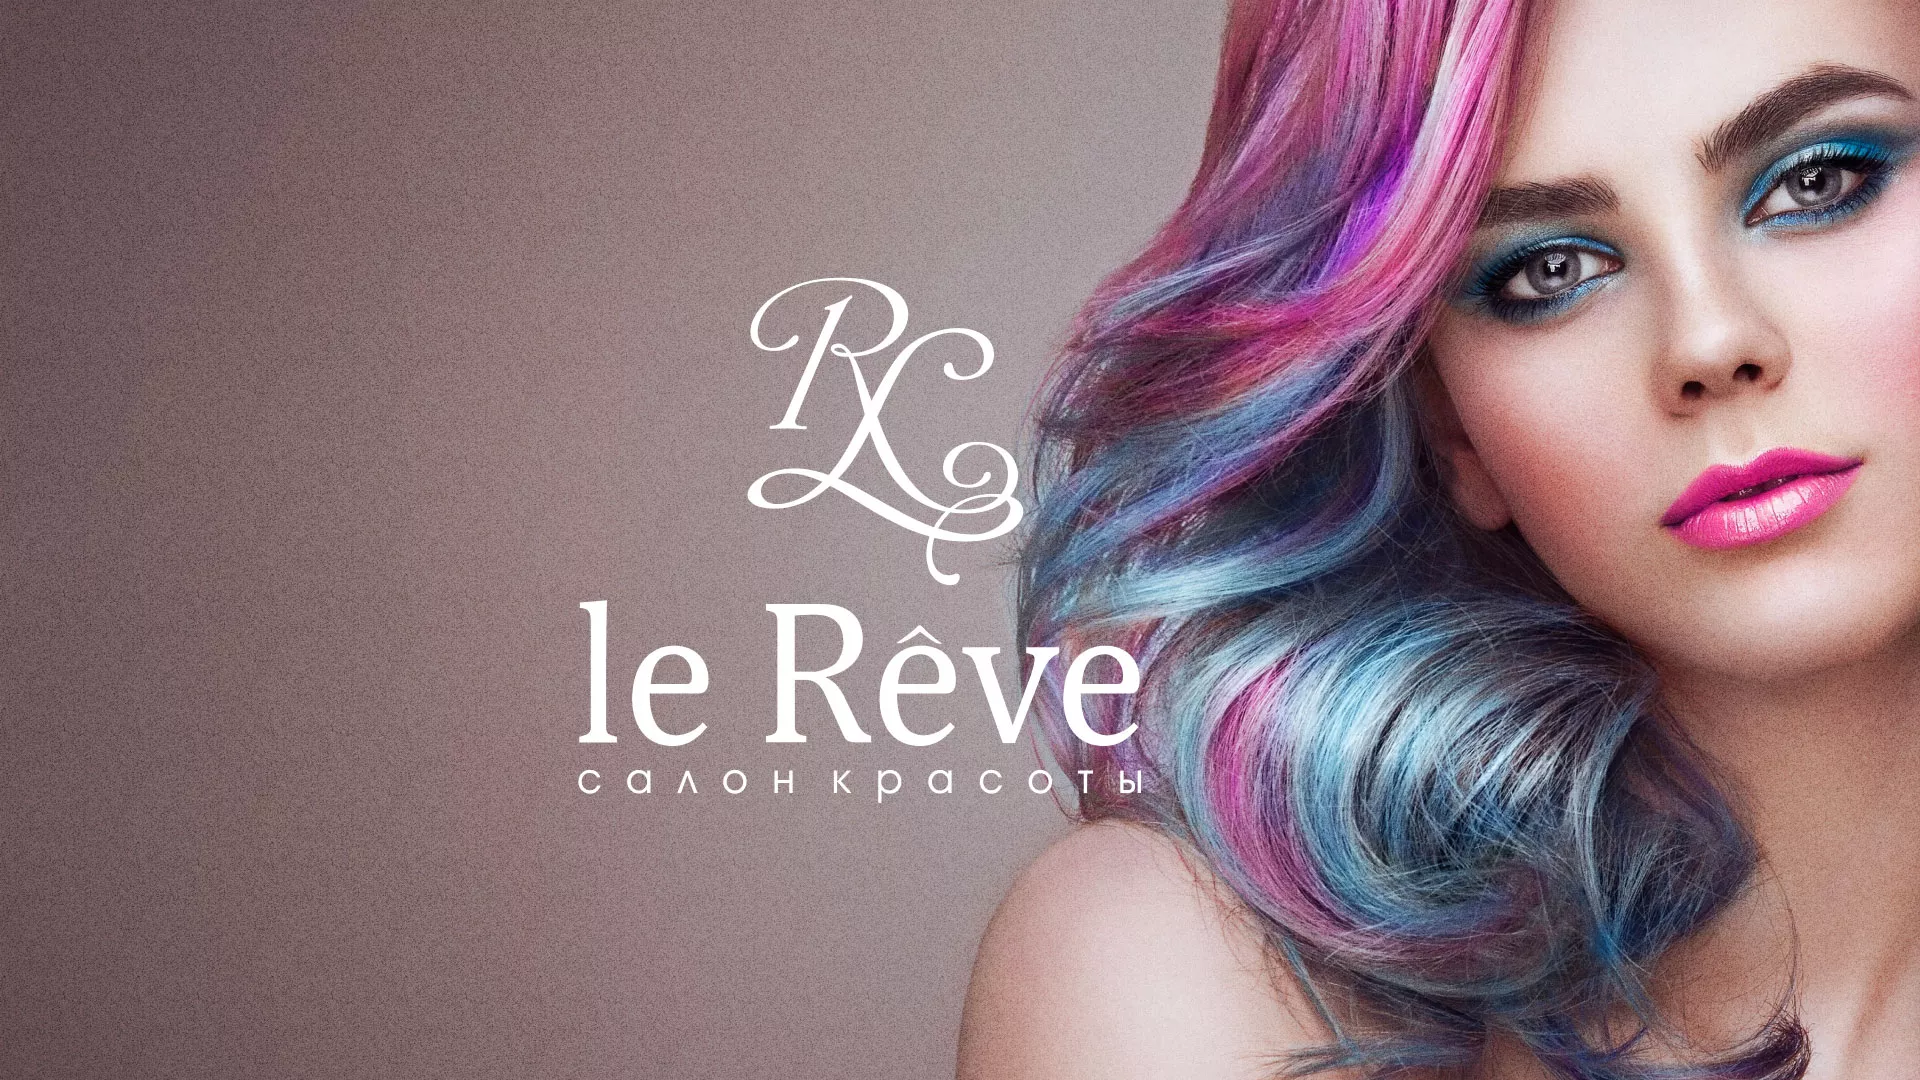 Создание сайта для салона красоты «Le Reve» в Мариинске